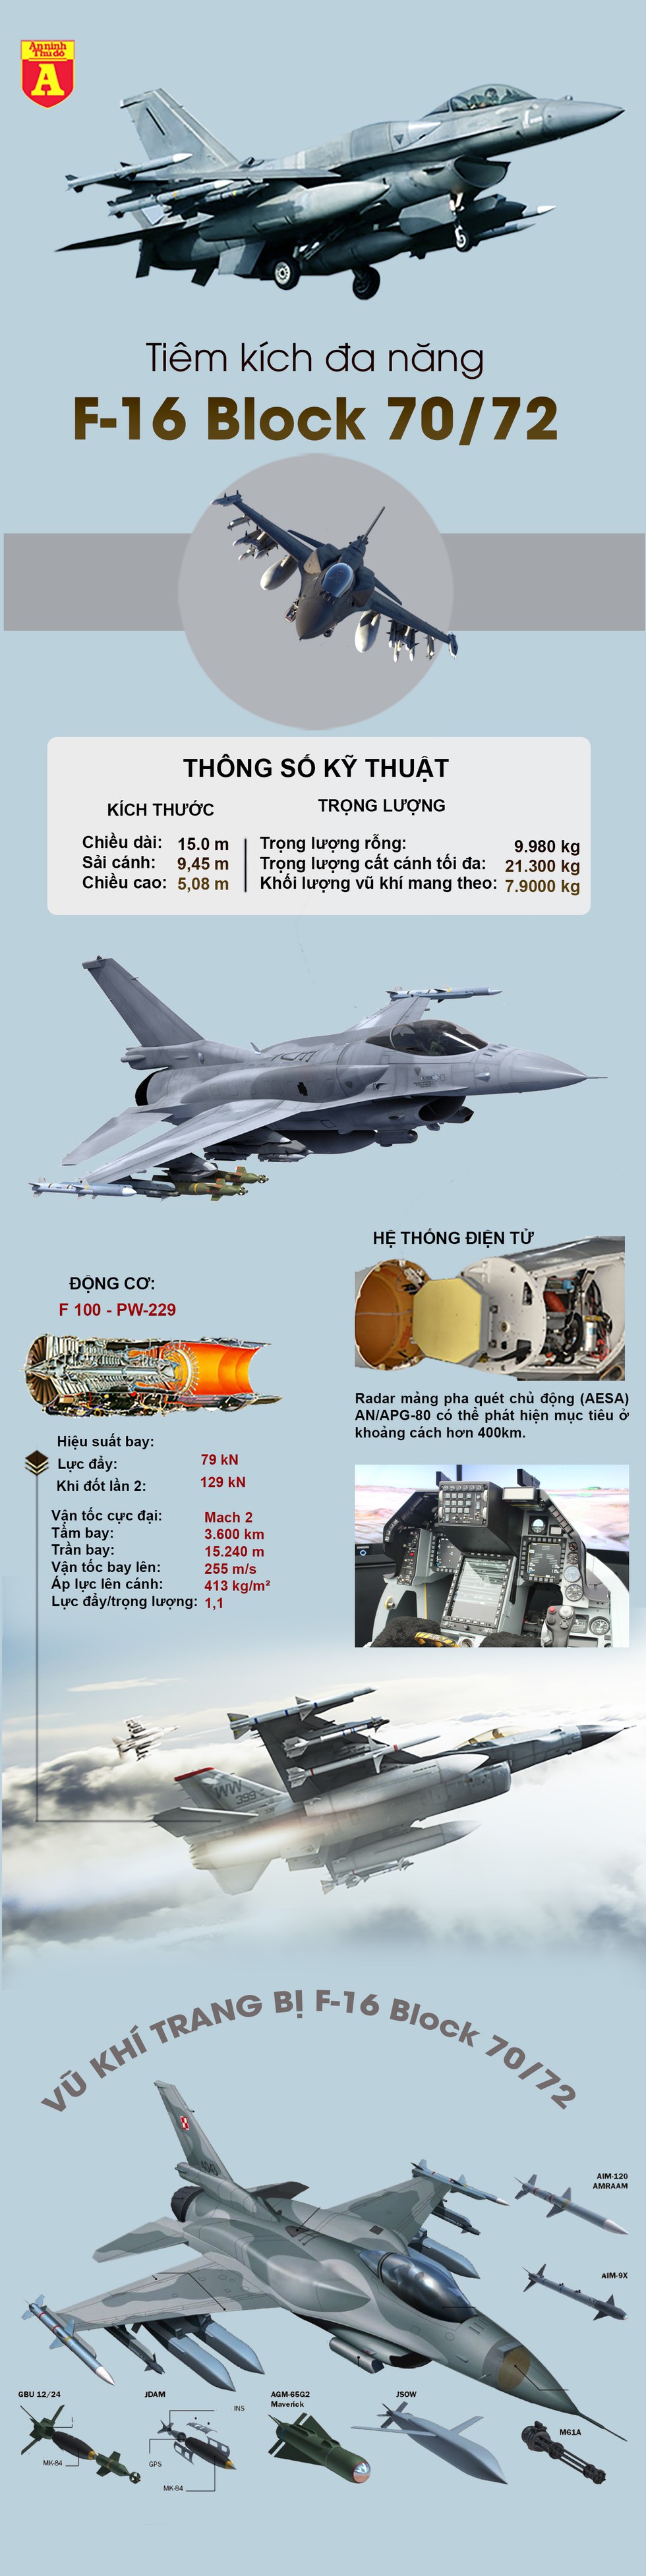 [Infographics] Mỹ chính thức sản xuất loạt phiên bản mạnh nhất của F-16 - Ảnh 1